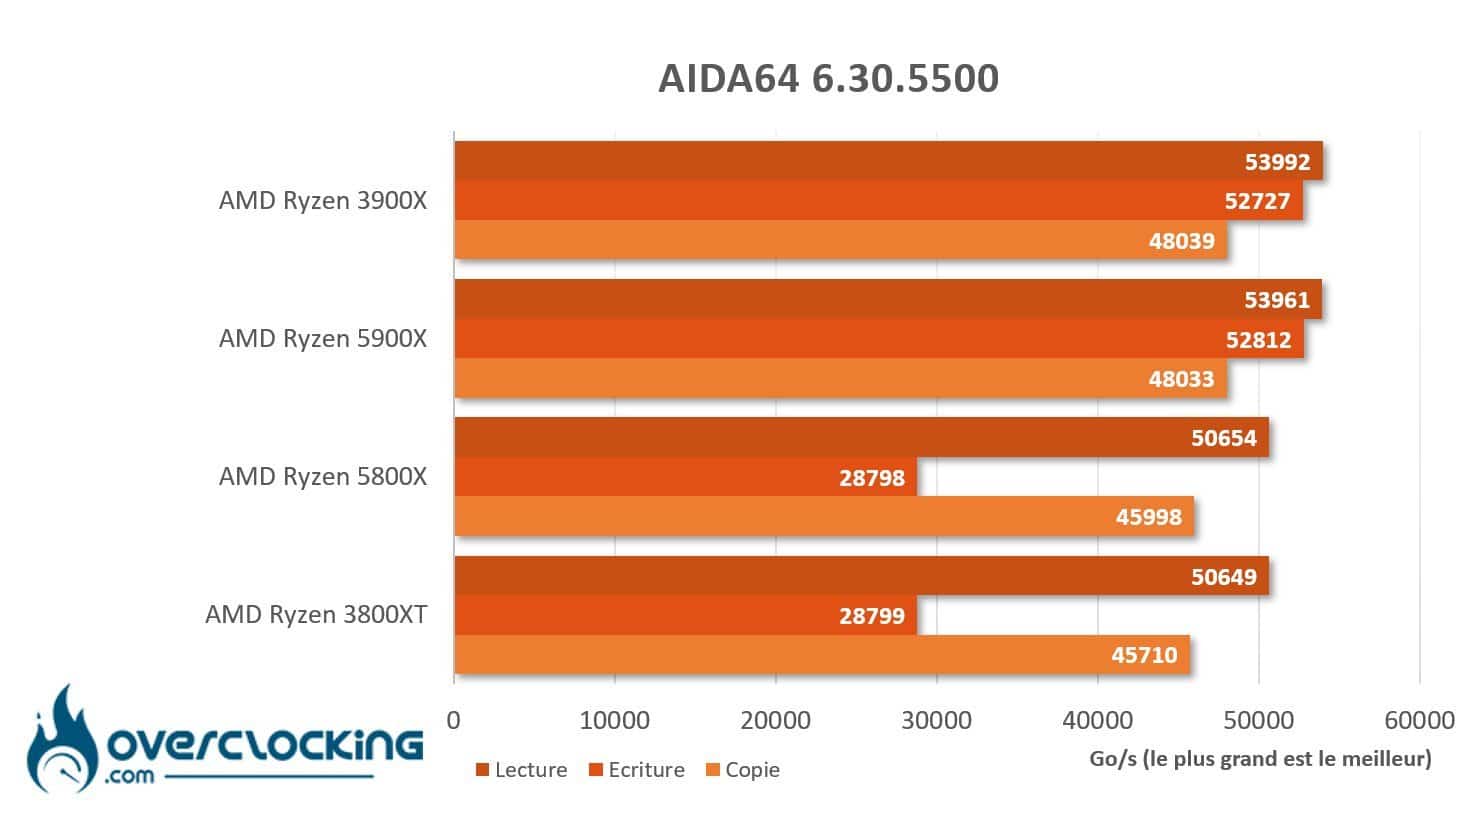 AMD Ryzen 5800X et 5900X sous Aida64